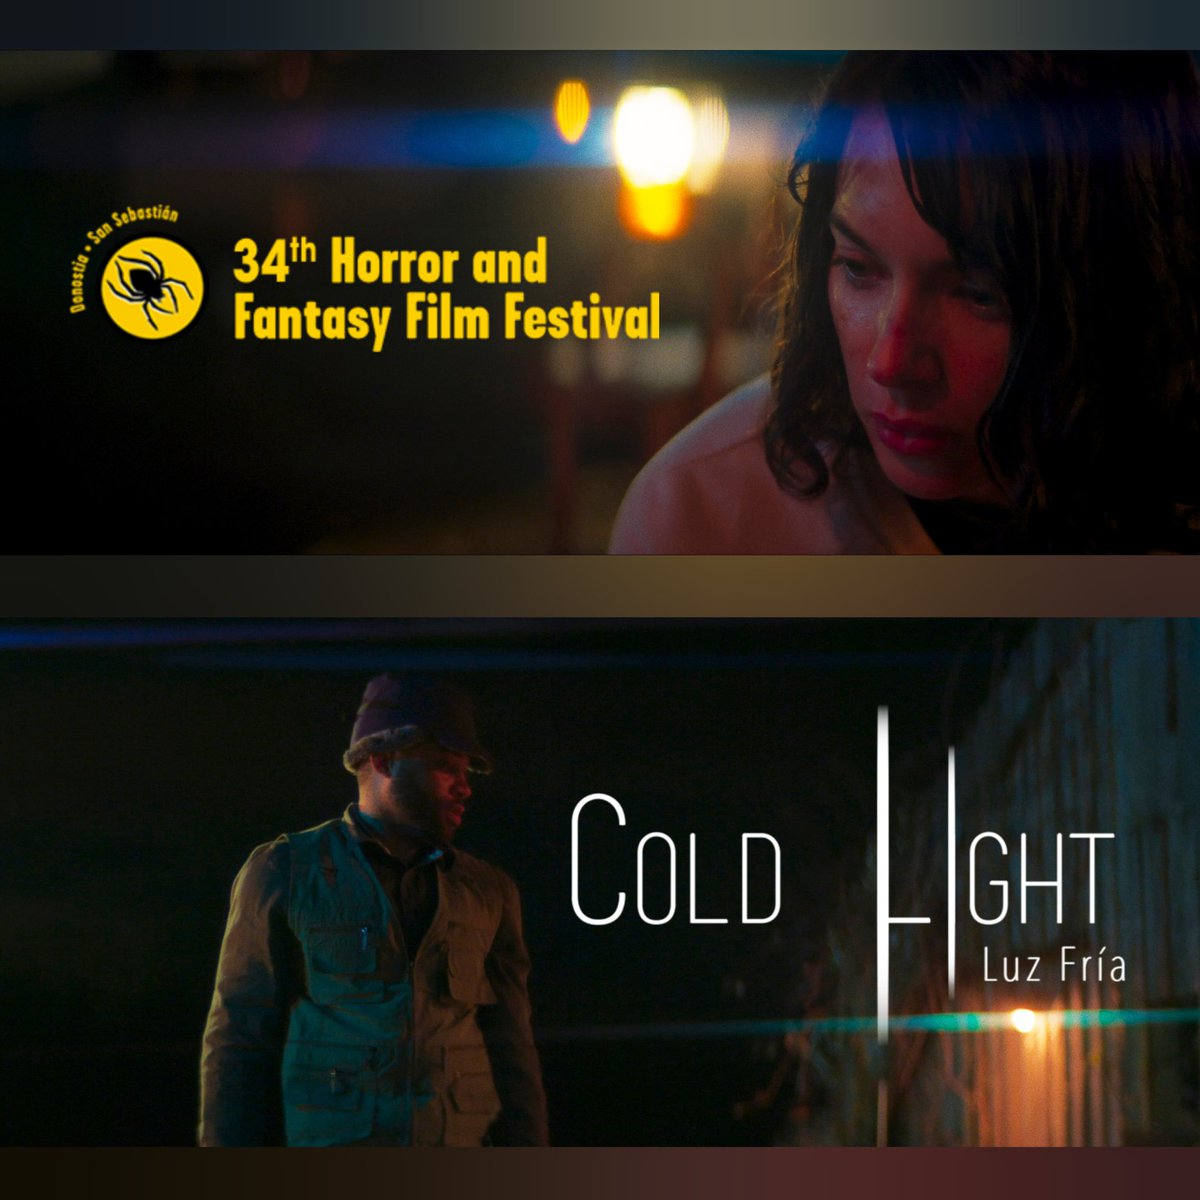 Cold Light will be projecting at the San Sebastian @horrorfestival  

Sunday October 29
.
.
.
.
.
.

#filmmaking #shortfilm #sansebastianhorrorfilmfestival #vancouverfilm #lovefilm #thrillermovie #horrorfilm #filmfestival